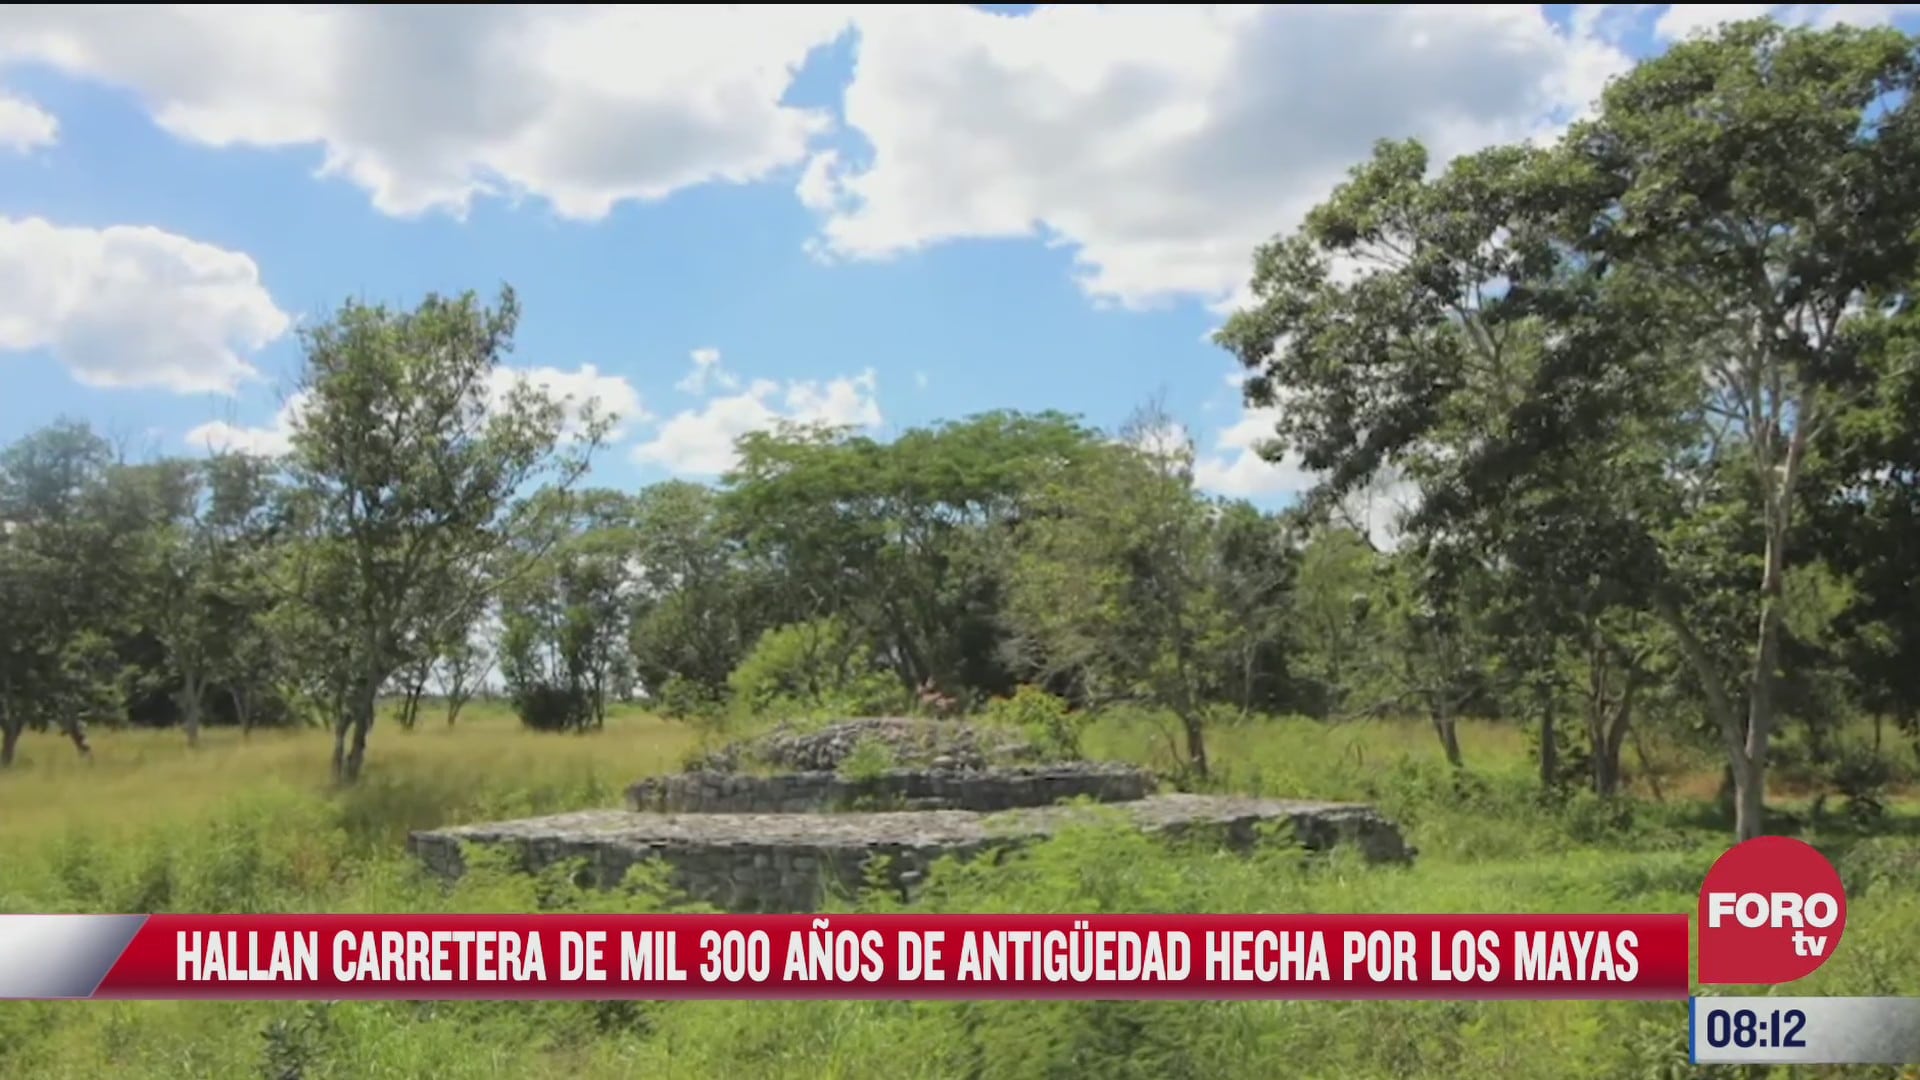 hallan carretera de mil 300 anos de antiguedad construida por los mayas